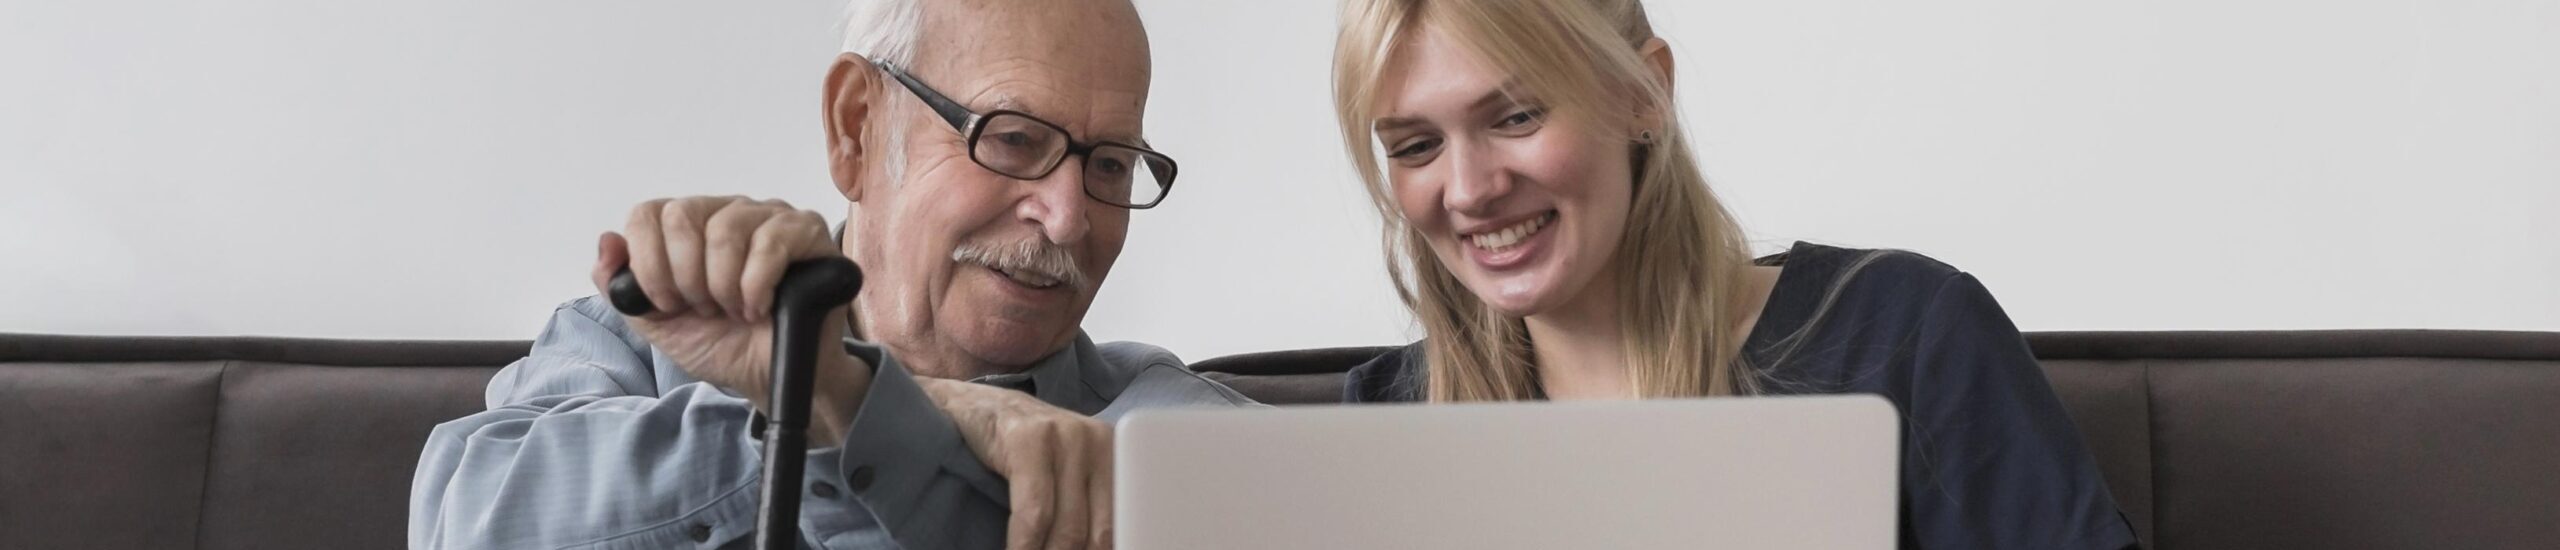 Hombre mayor con gafas señalando una pantalla mientras una chica rubia y joven ríe a su lado